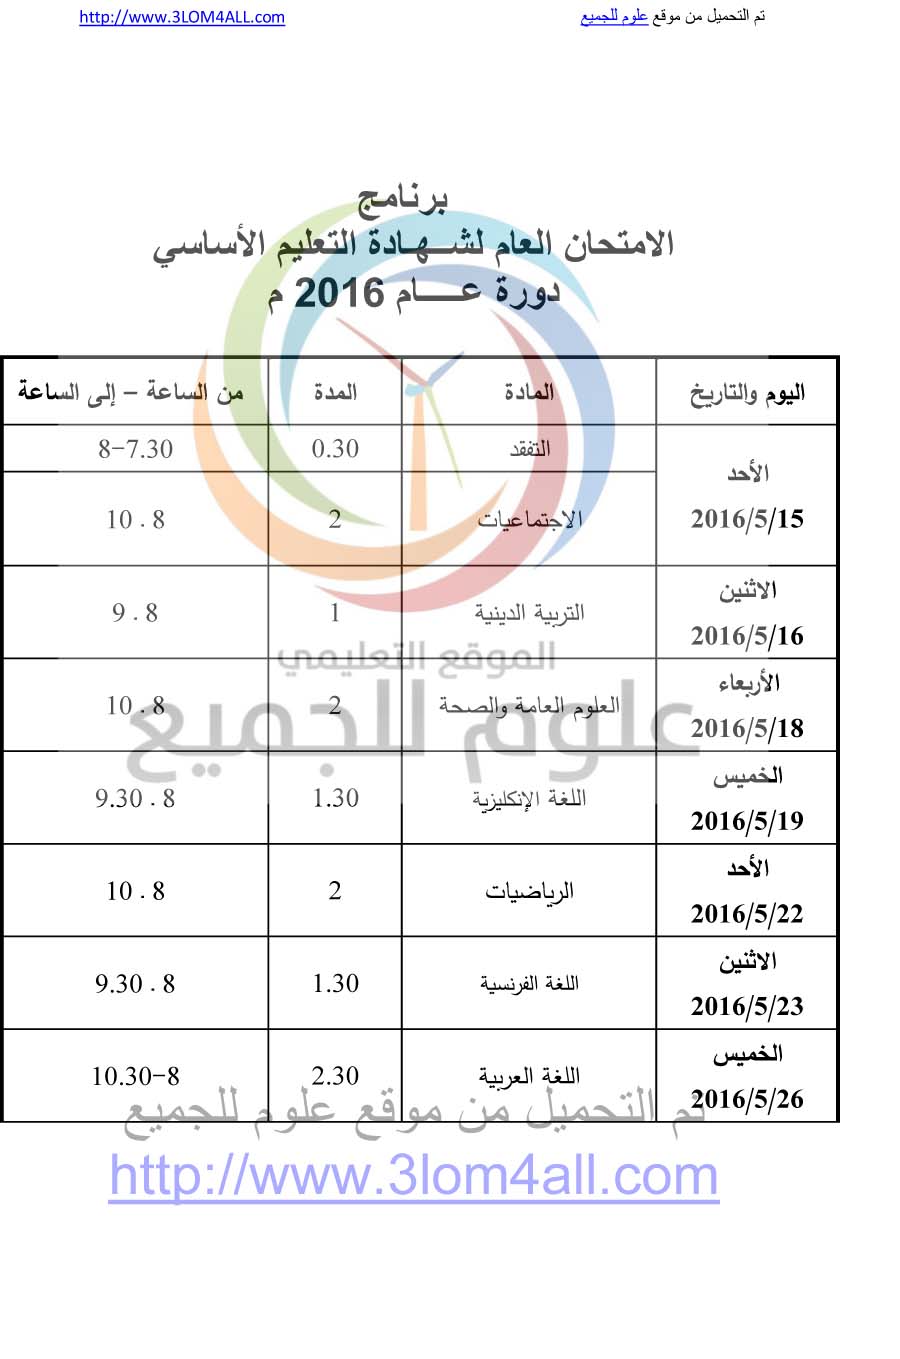 برنامج فحص التاسع 2016 سوريا - البرنامج الامتحاني لشهادتي التعليم الأساسي والإعدادية الشرعية لعام 2016 